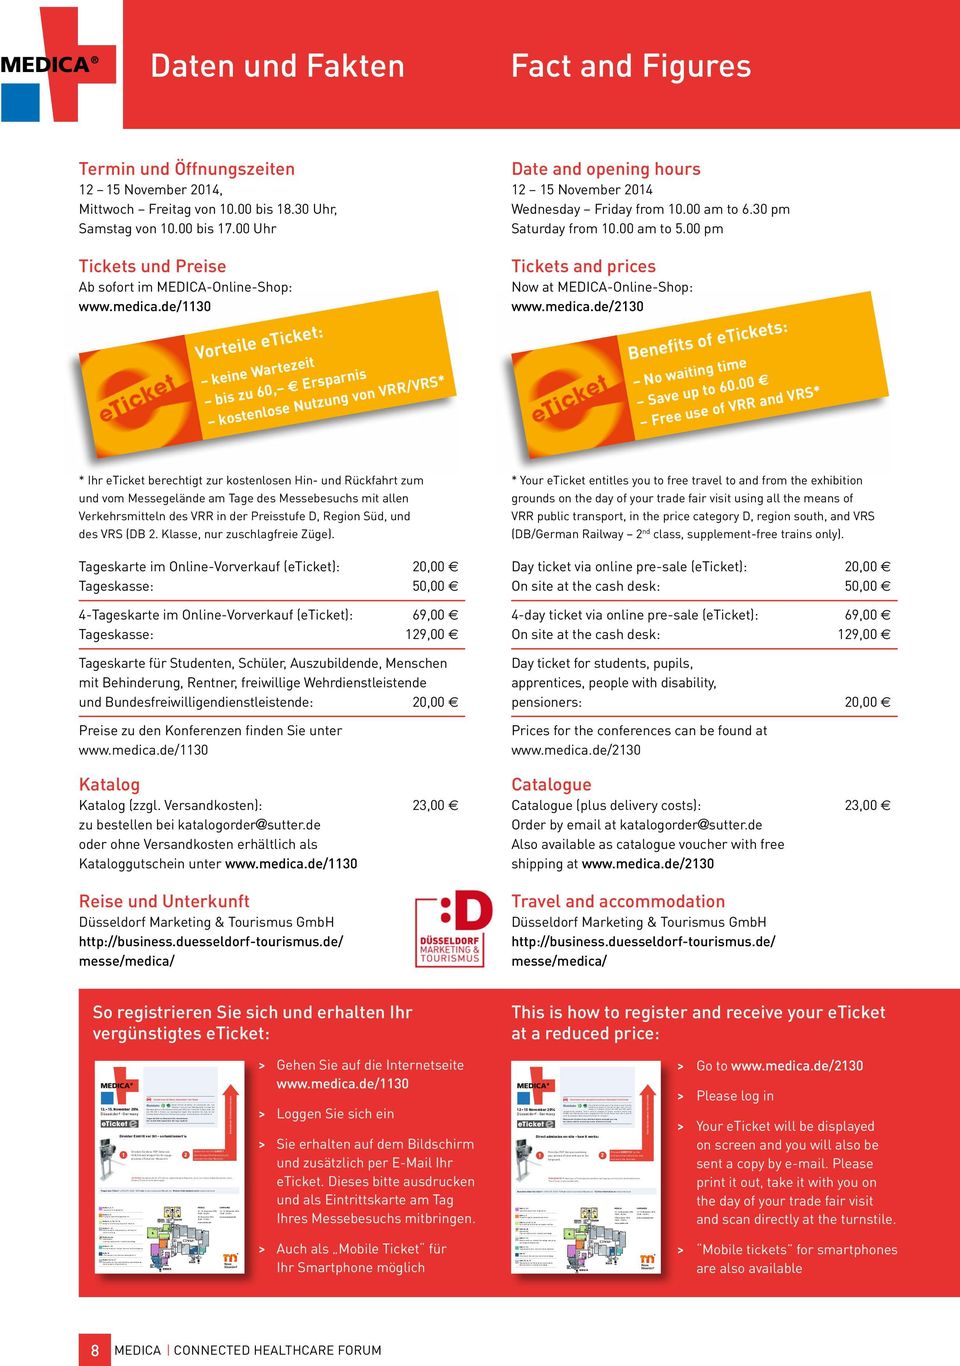 + 49 (0) 211 / 4560-7600 oder tickets-duesseldorf@sutter.de Weitere Informationen unter: www.medica.